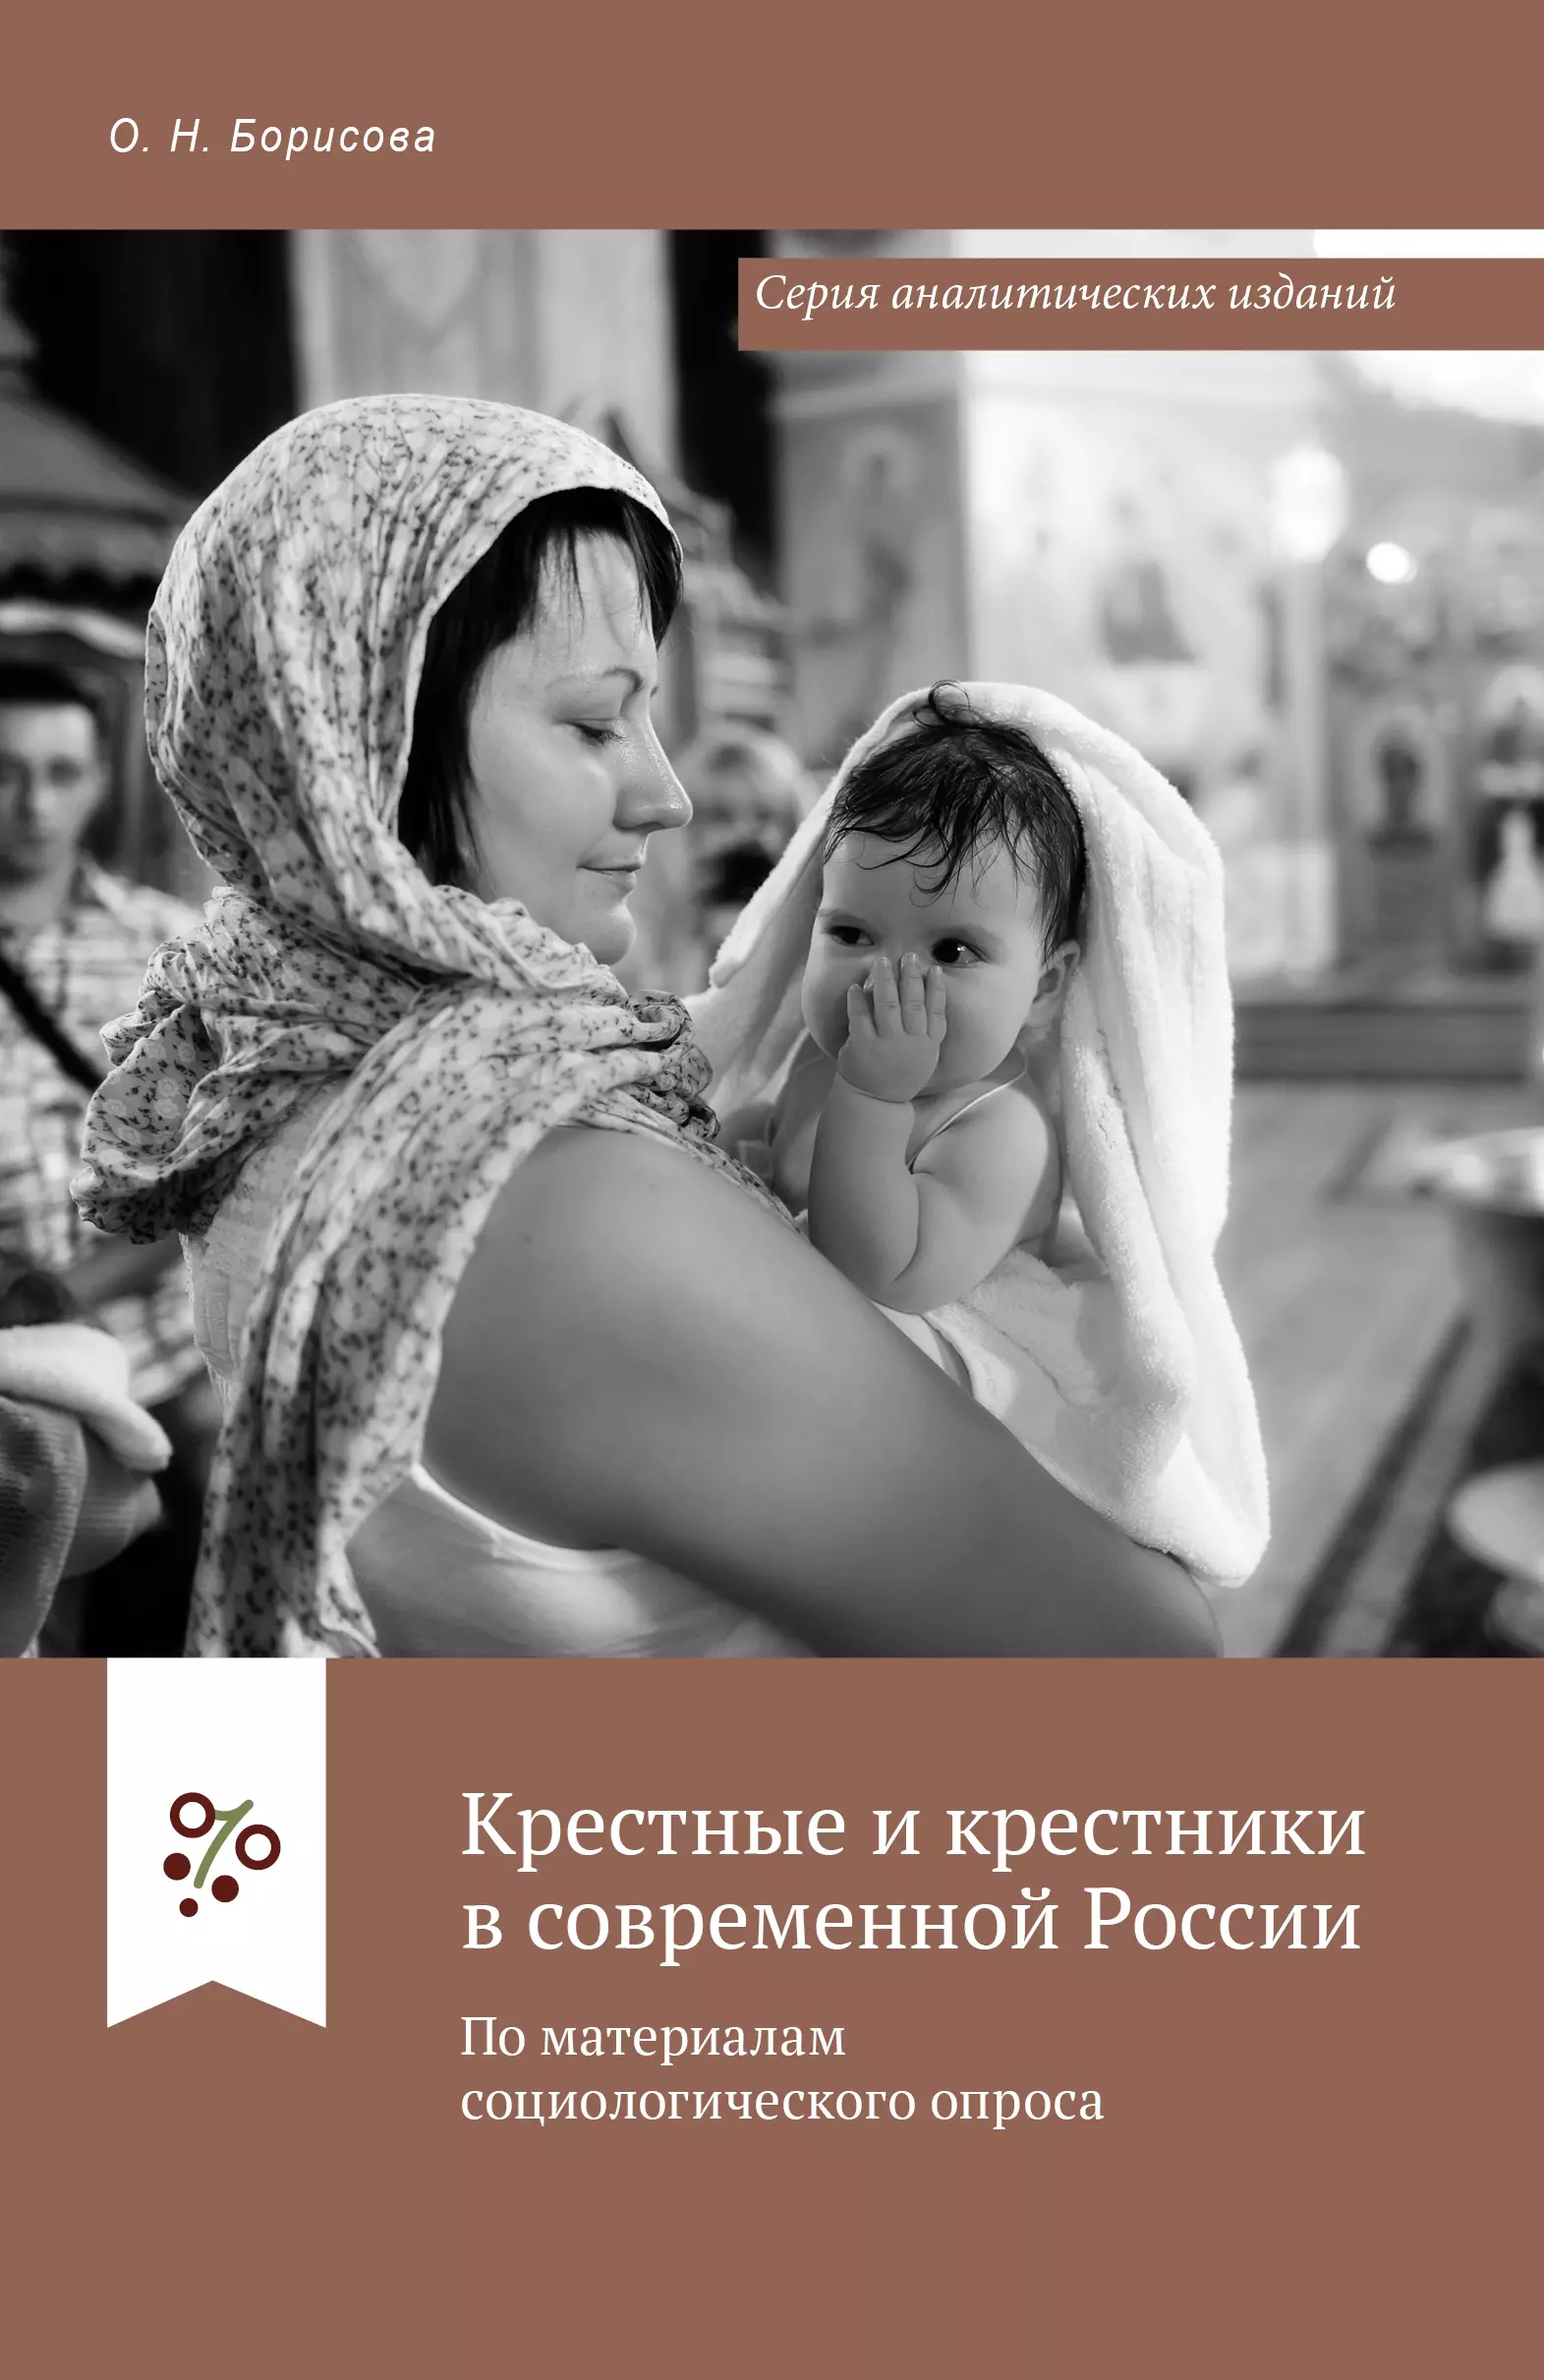 Крестные и крестники в современной России. По материалам социологического опроса